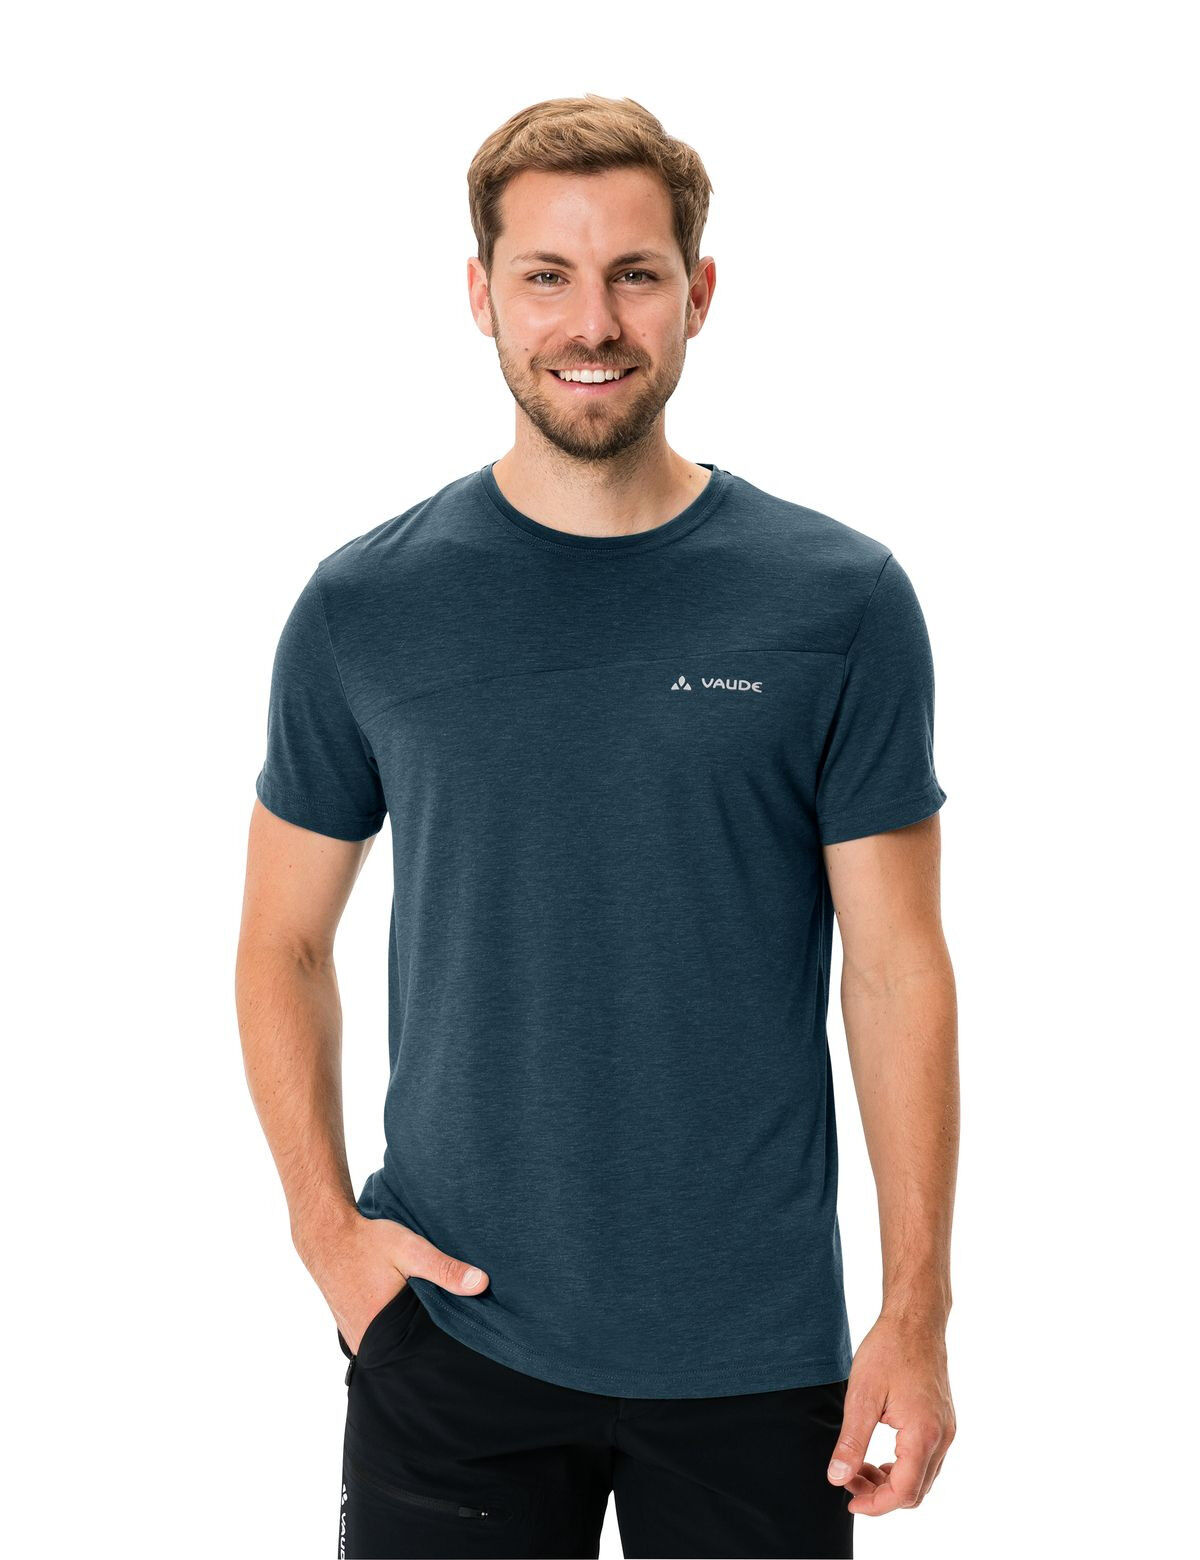 Vaude - Sveit T-Shirt - T-Shirt - Men's